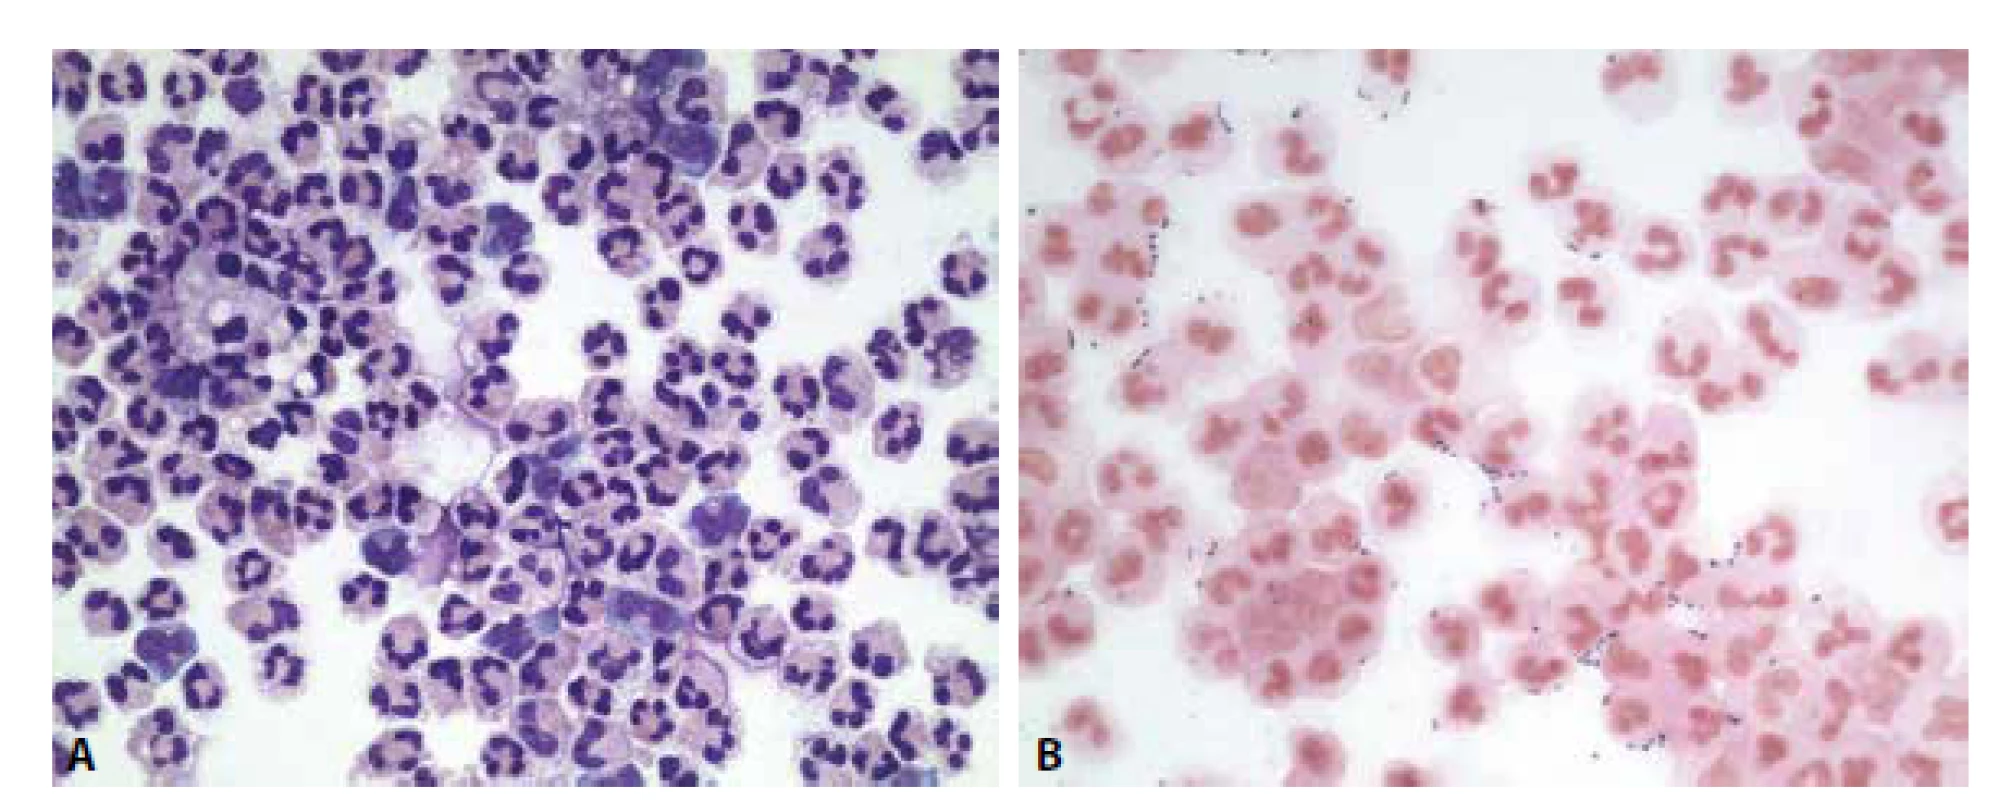 Ilustrační případ 1. Hnisavá meningitis. (A) Neutrofilně granulocytární pleocytóza. MGG, 400x. (B) Extra- i intracelulární přítomnost
diplokoků. Gram. 400x.